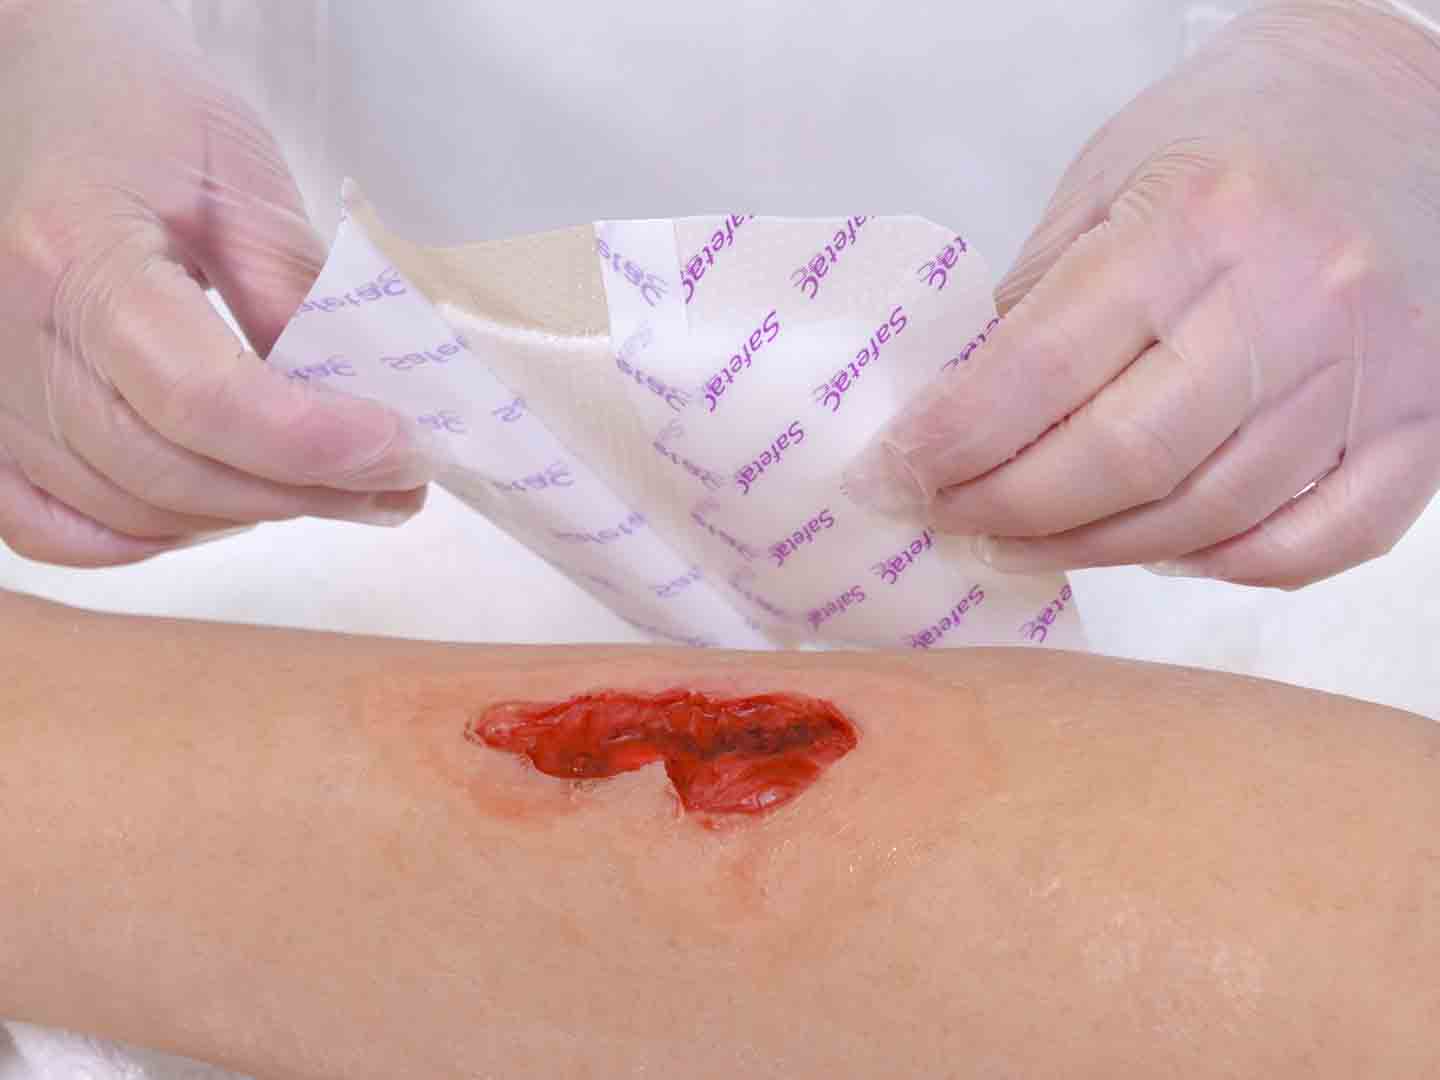 Fjern beskyttelsespapir før applisering på sår